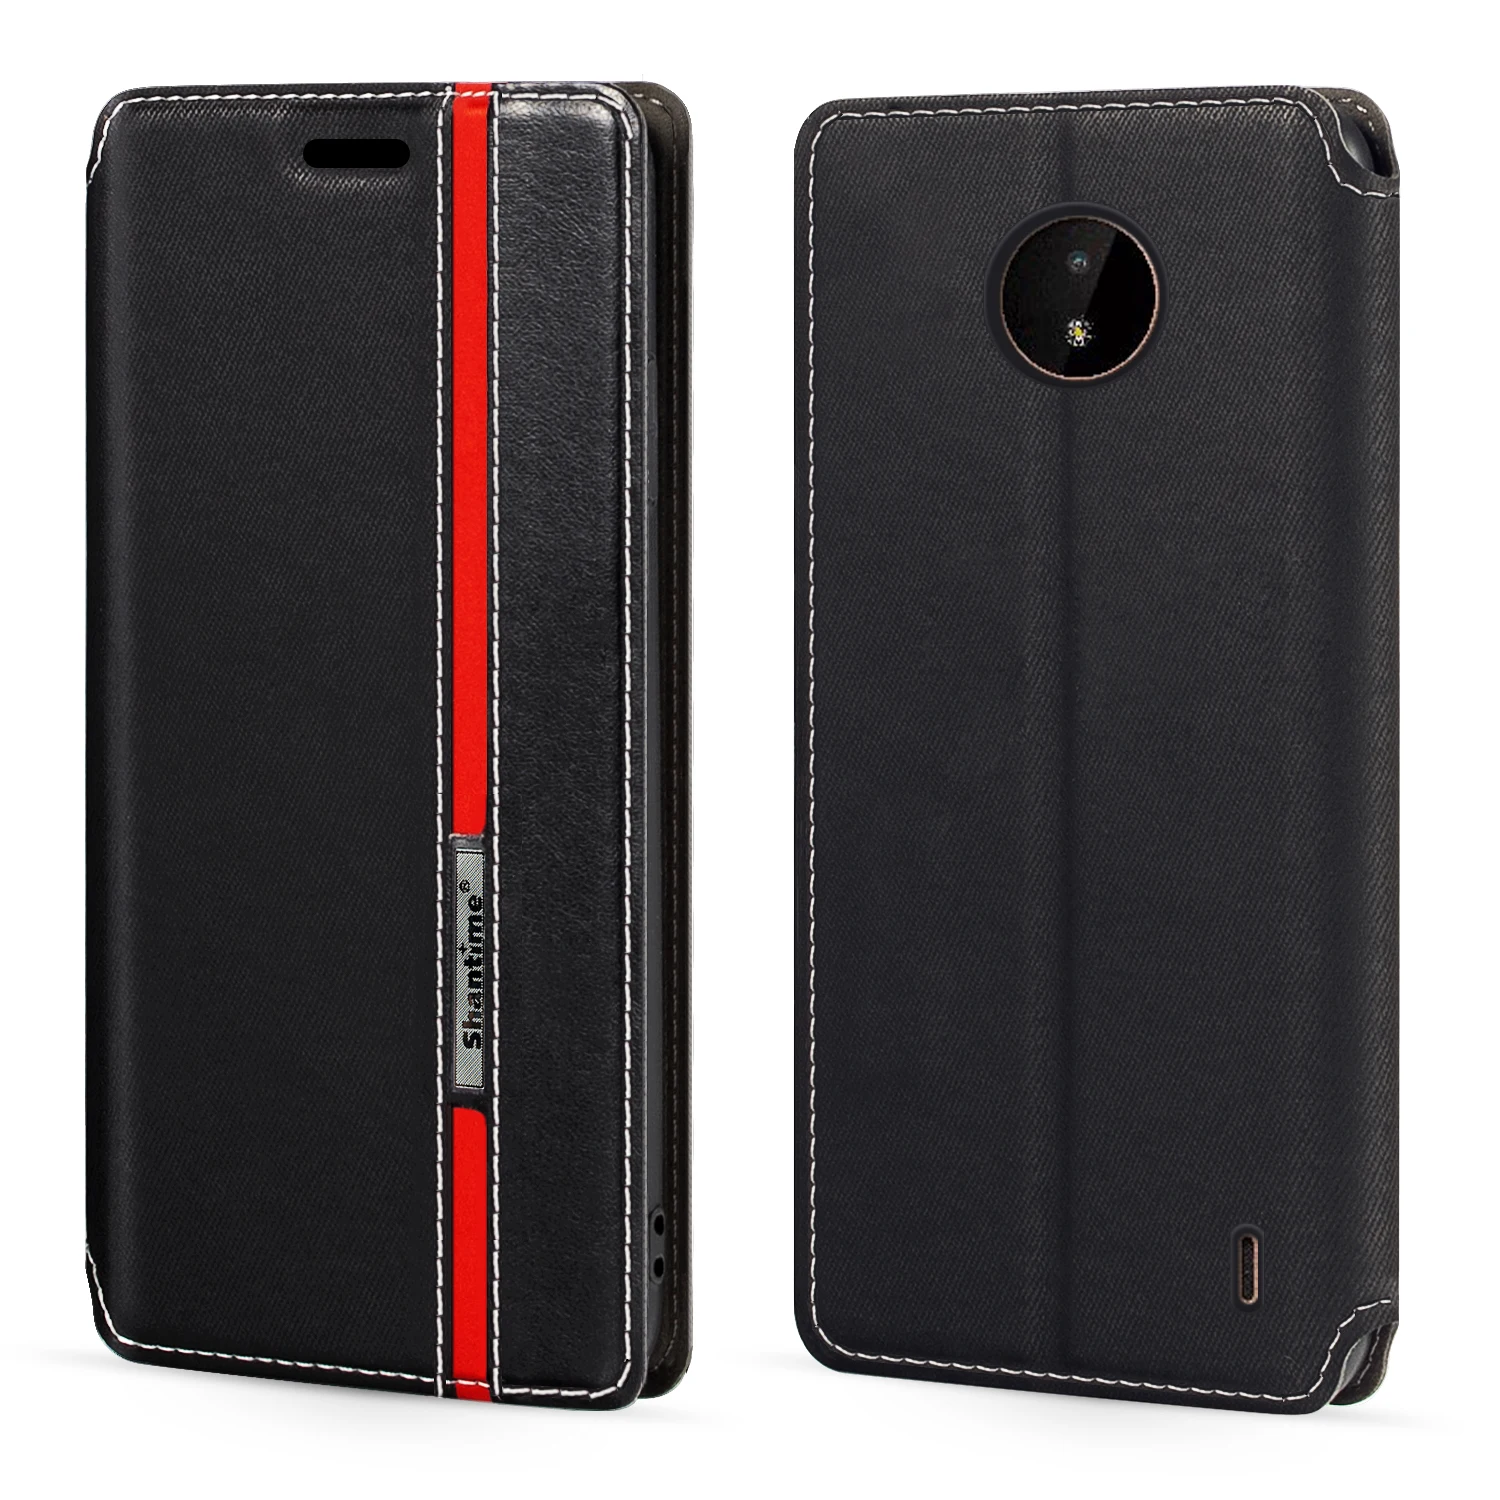 Nokia C20 Durumda Moda Renkli Manyetik Kapatma açılır deri kılıf Kapak kart tutucu ile 5.52 inç